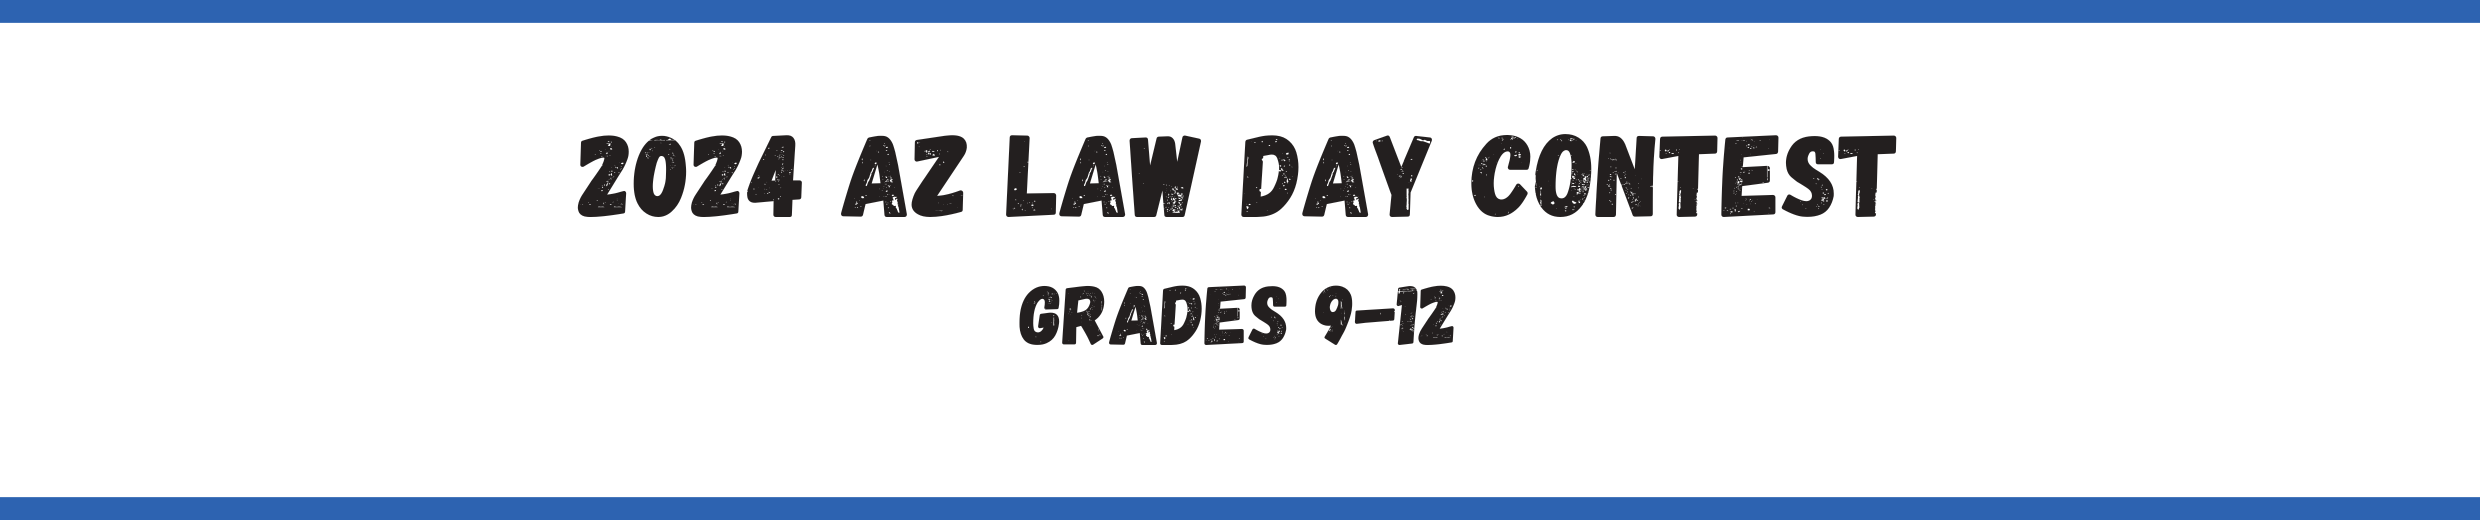 2023 Law Day Contest Grades 9-12